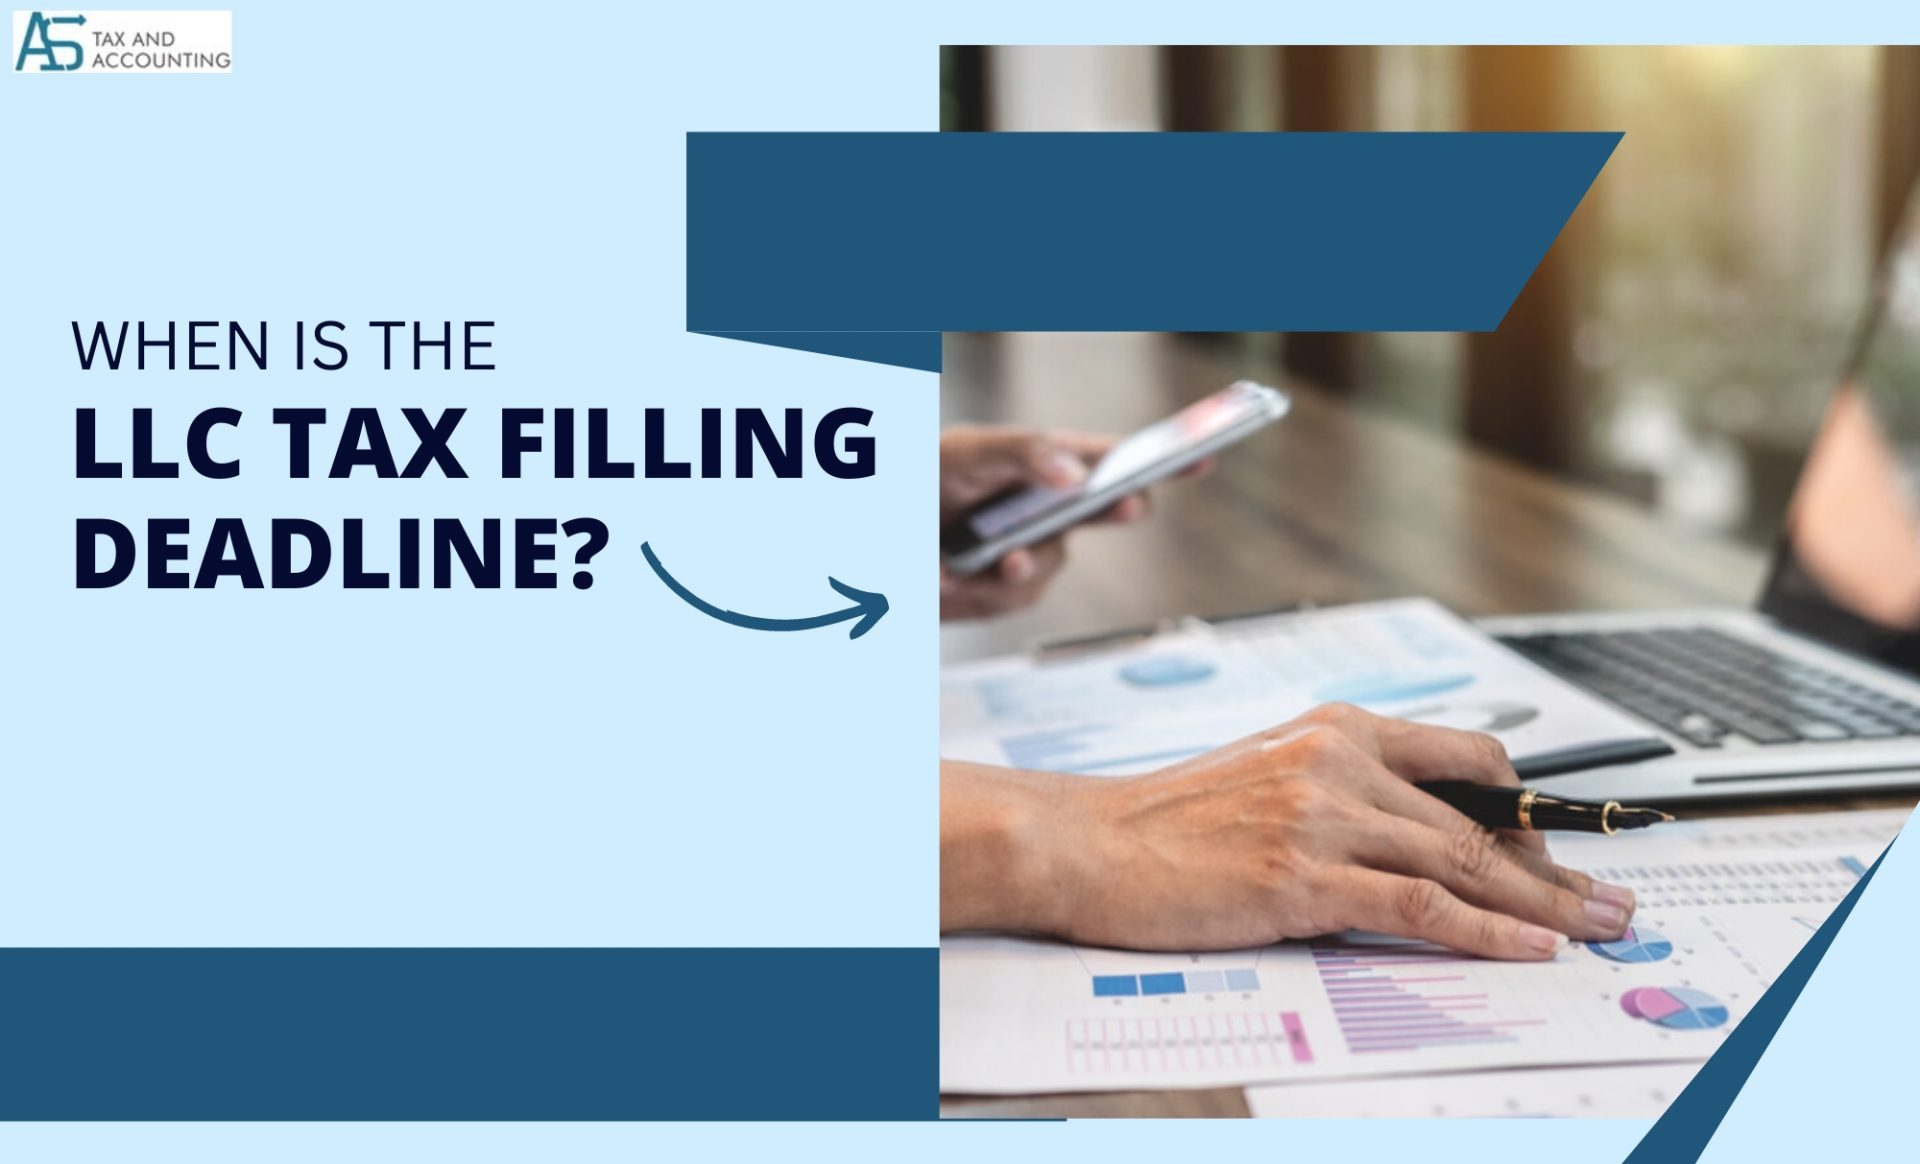 LLC Tax Filing Deadline Small Business Tax Deadlines for 2023